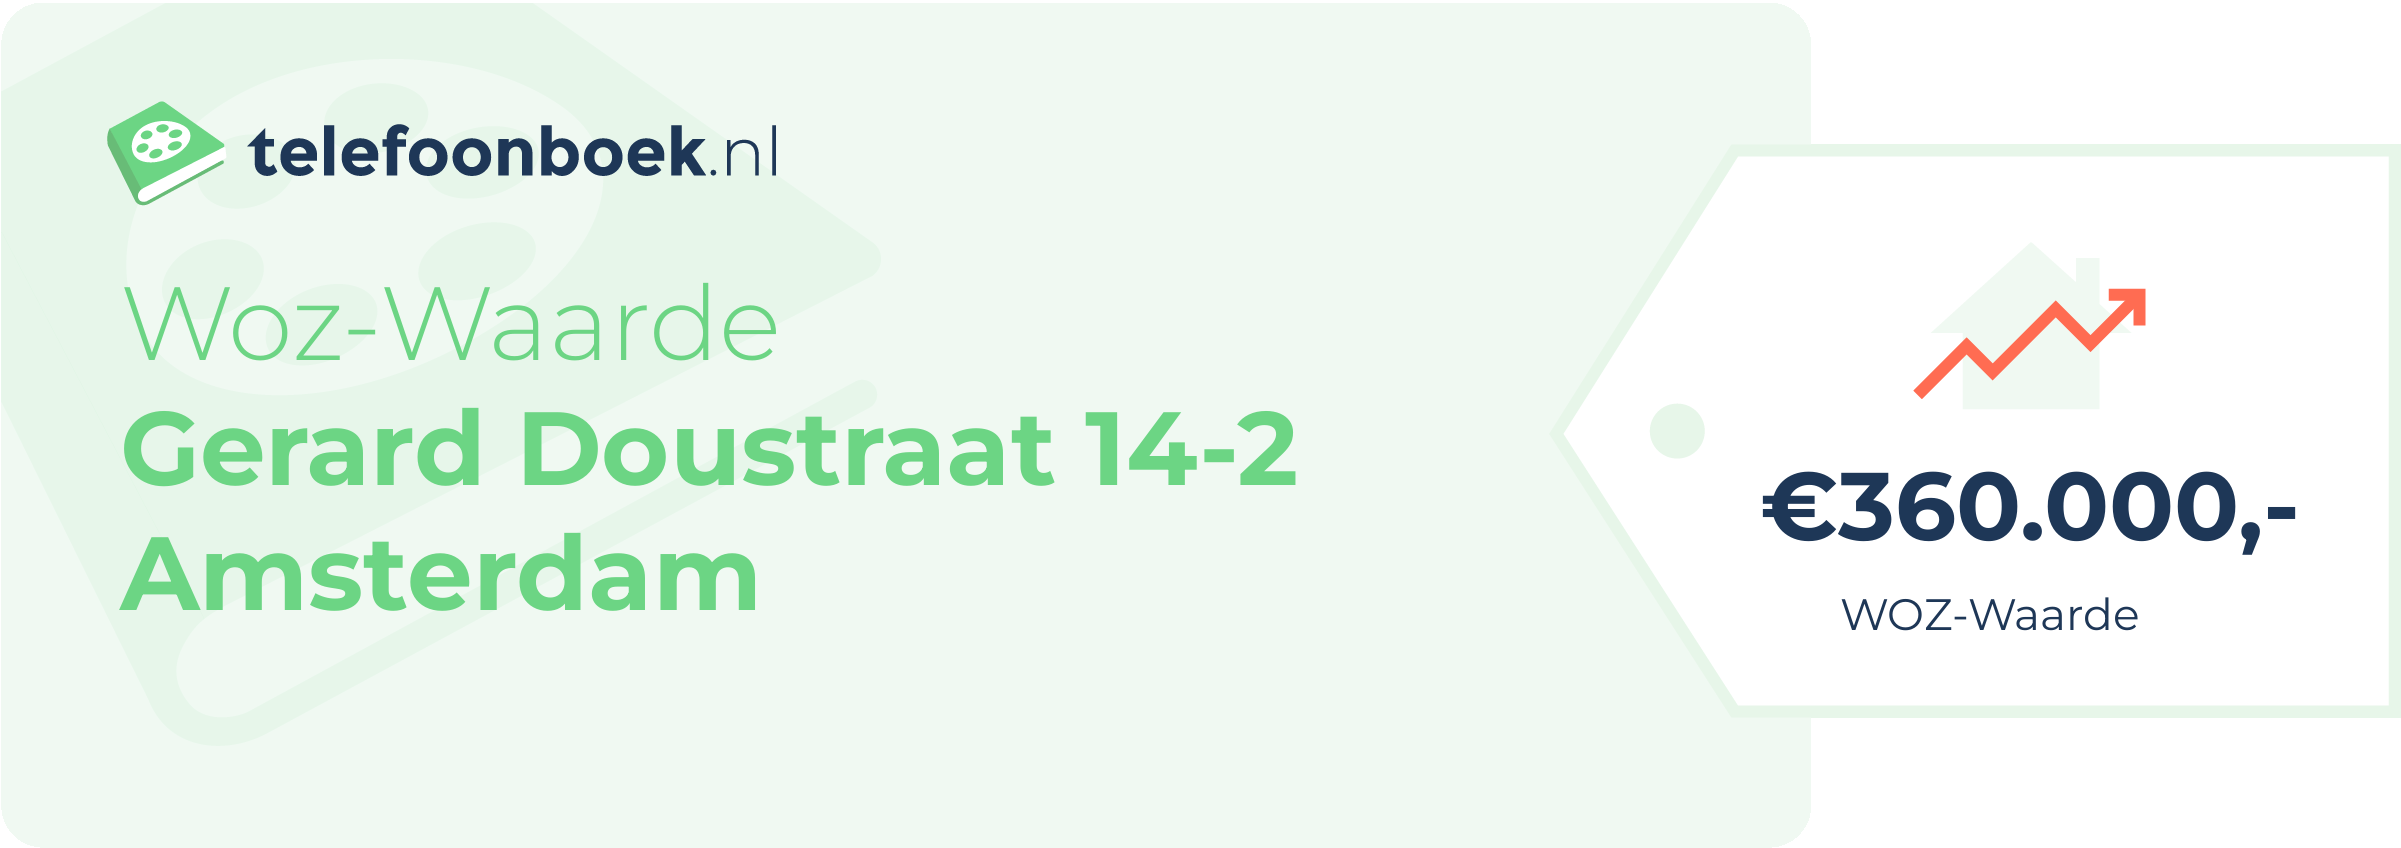 WOZ-waarde Gerard Doustraat 14-2 Amsterdam